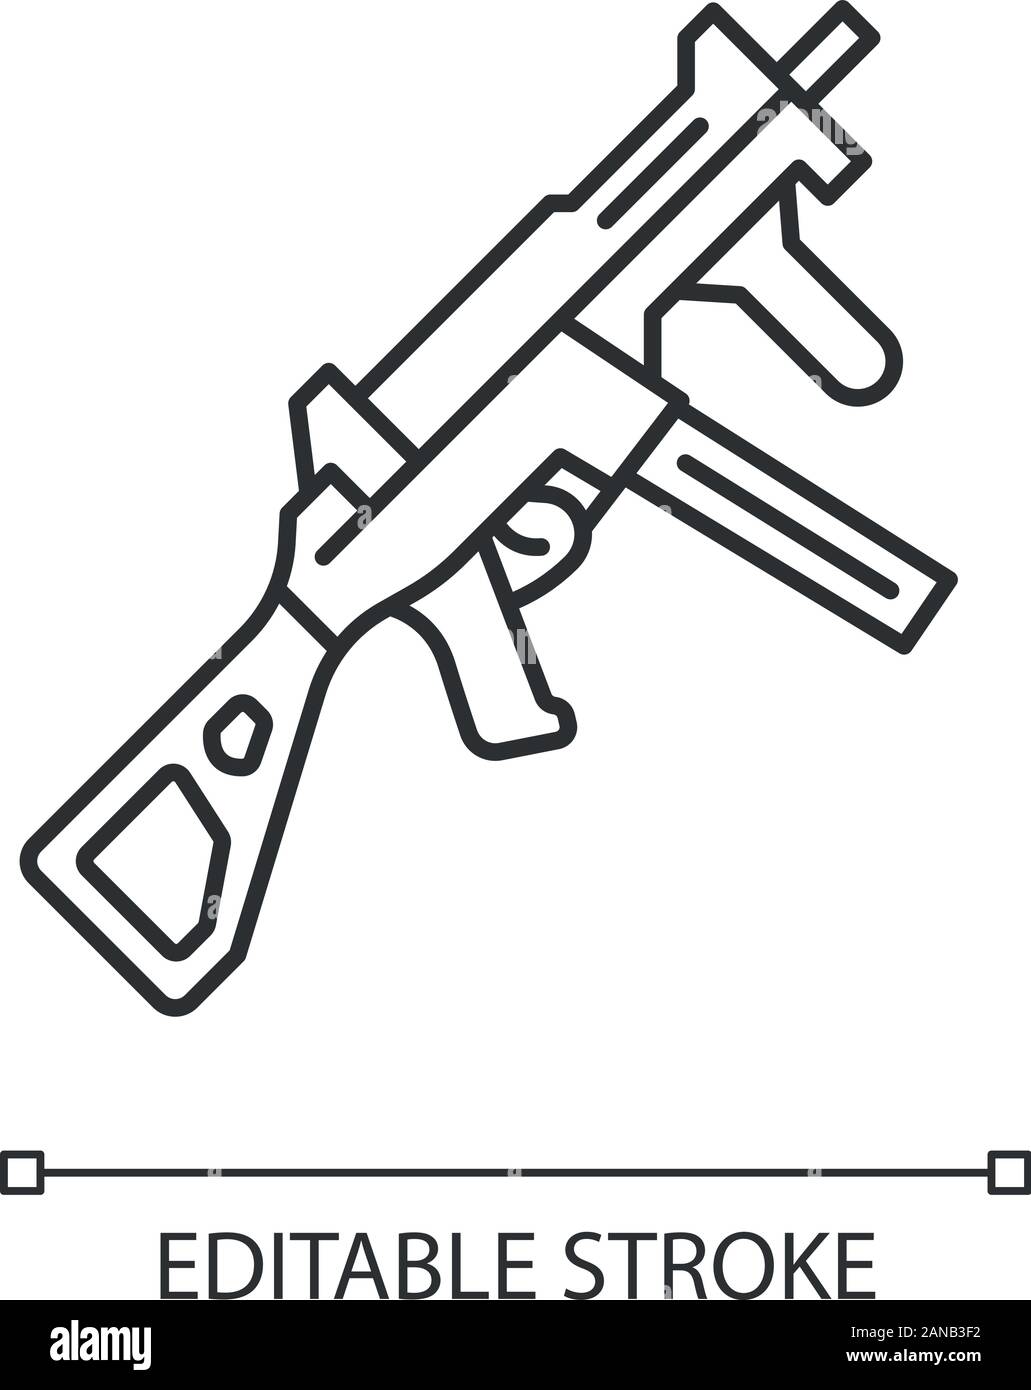 ícone de cor de arma hk ump. arma de fogo de videogame virtual